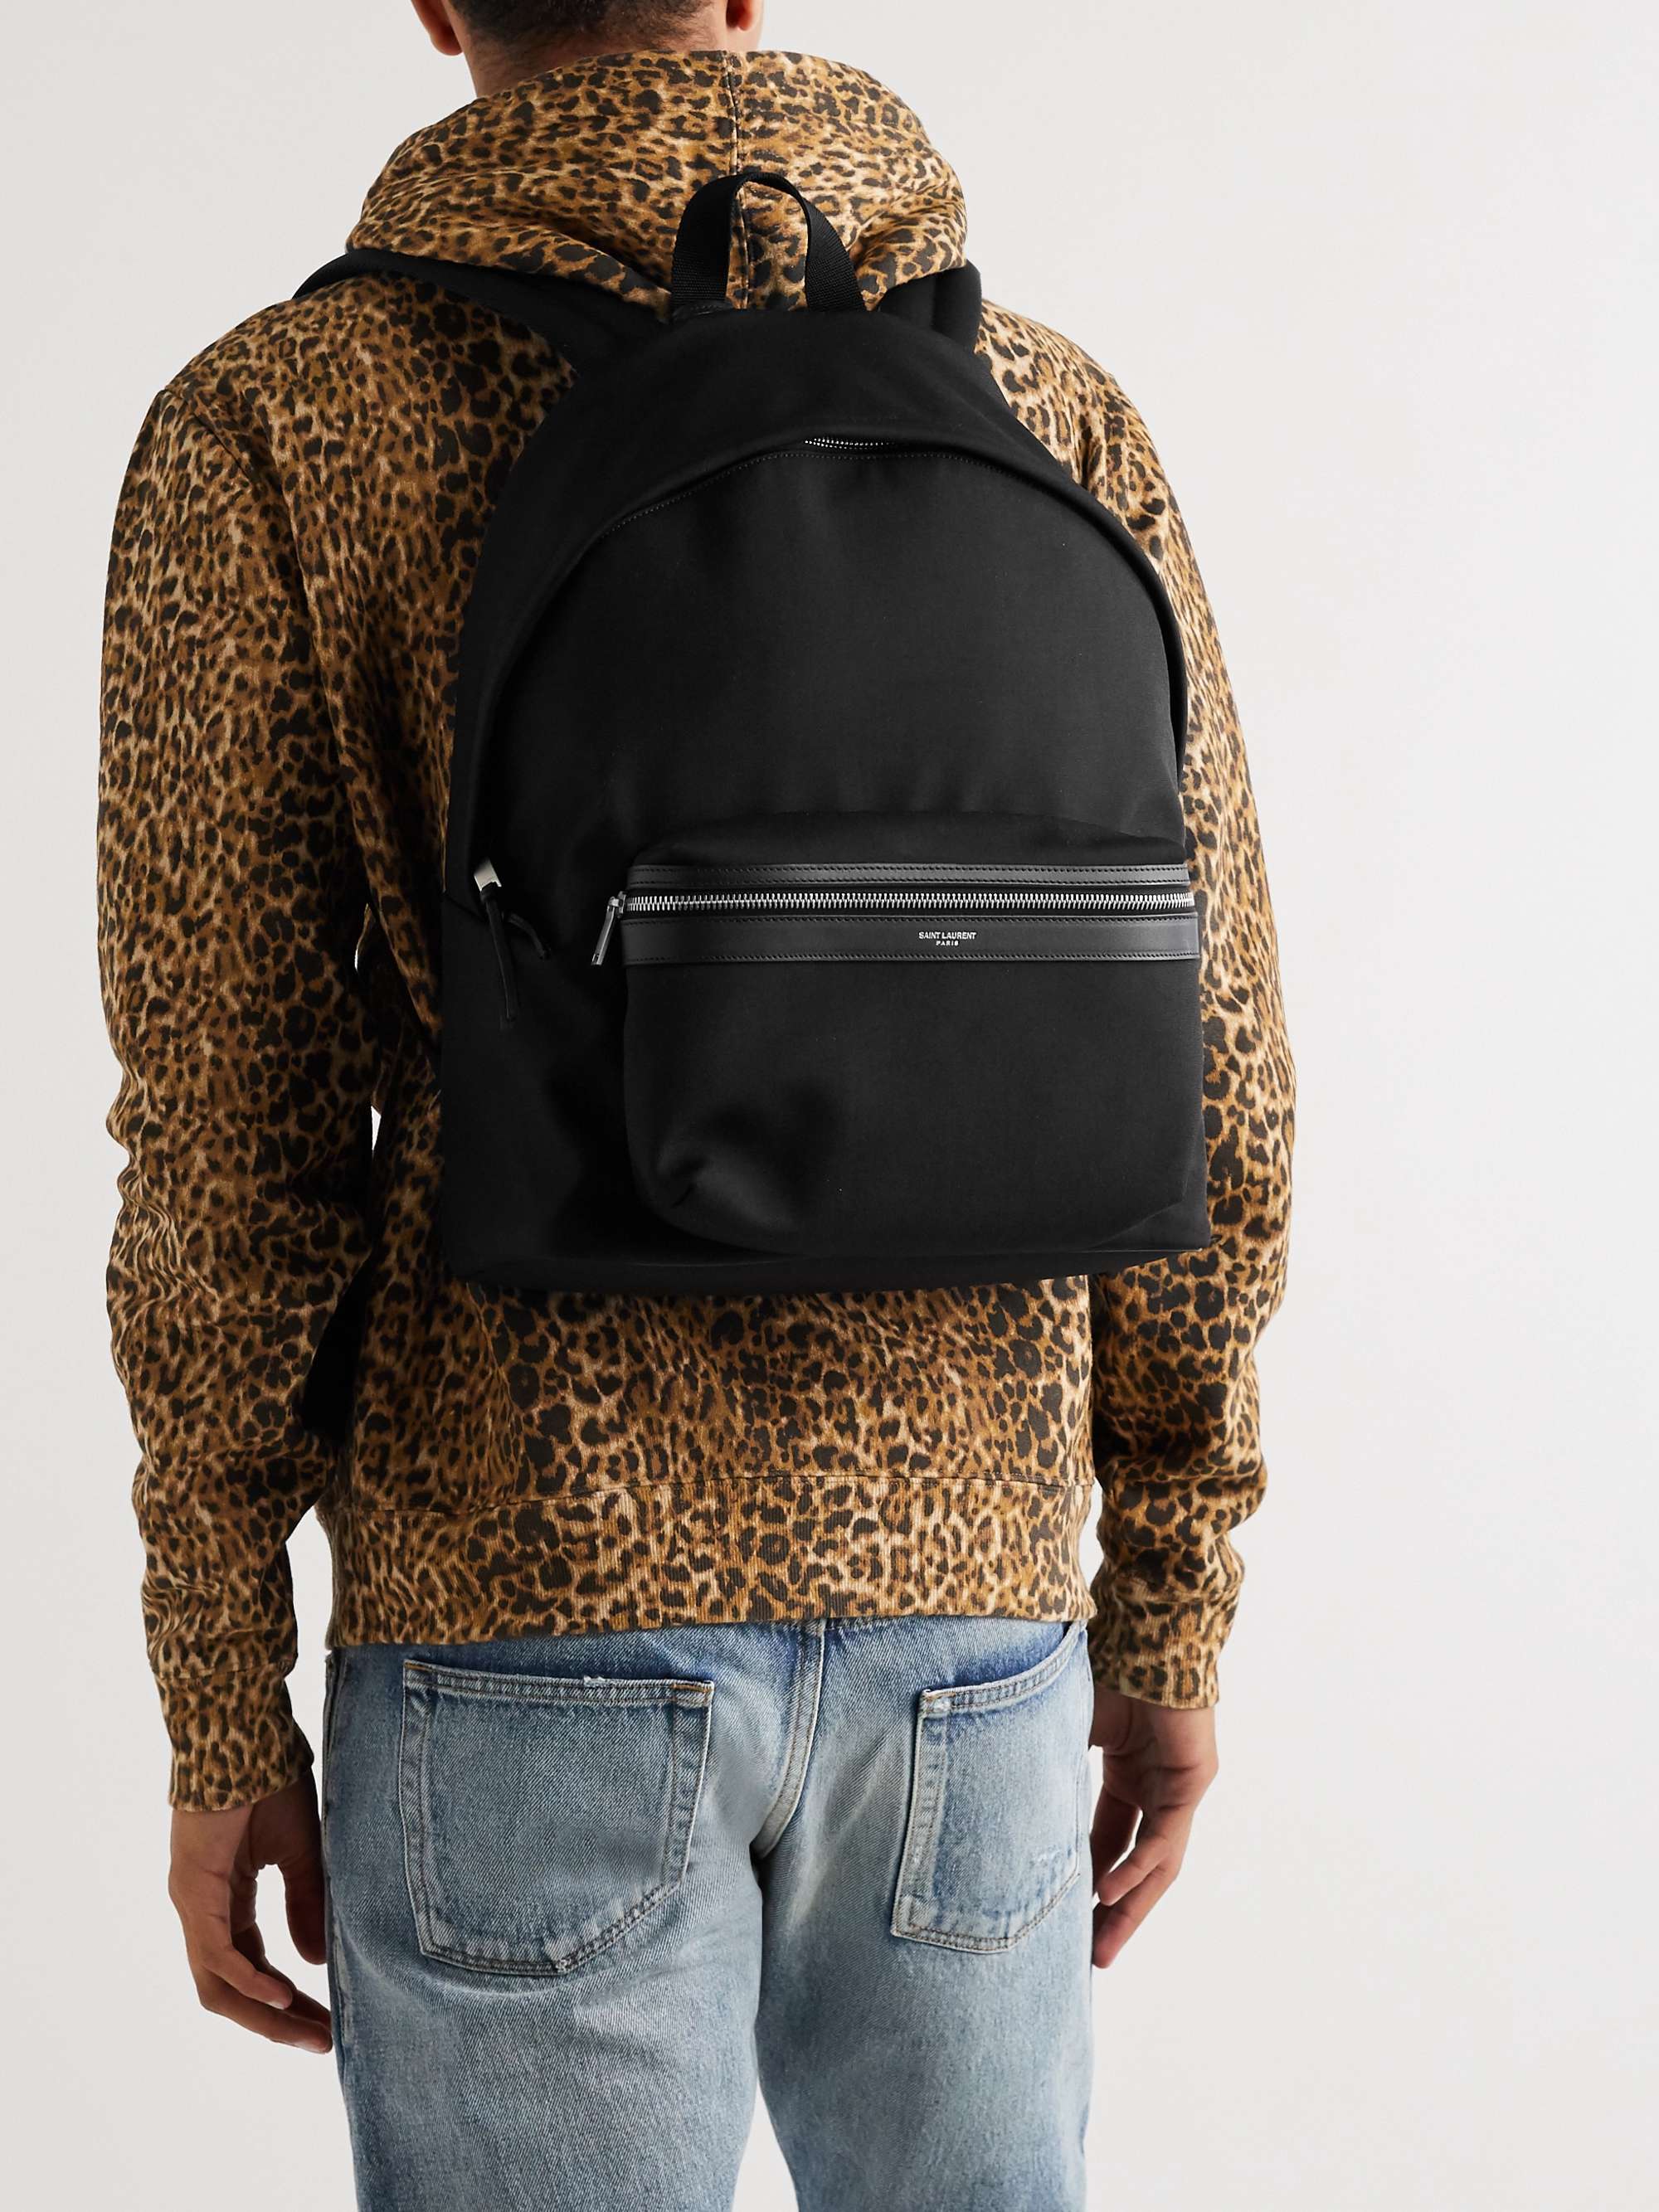 SAINT LAURENT Leather-Trimmed Canvas Backpack for Men | MR PORTER